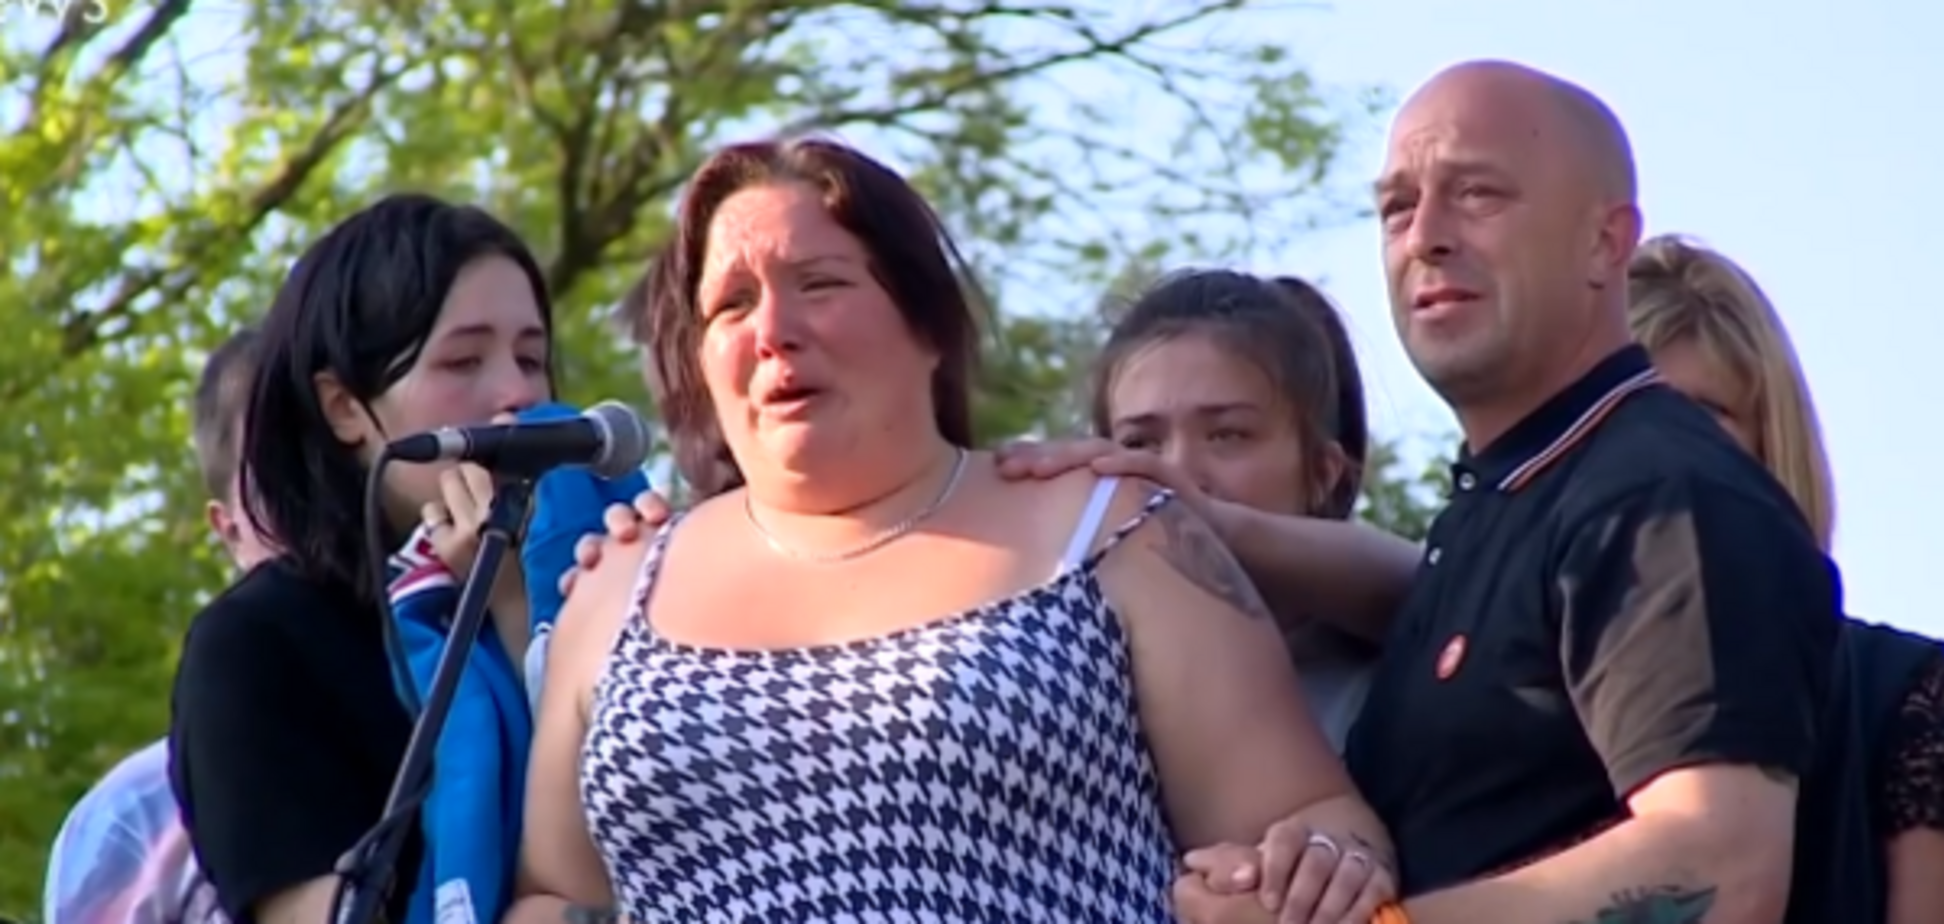 Теракт в Манчестере: безутешная мама погибшей девочки растрогала сеть сильной речью